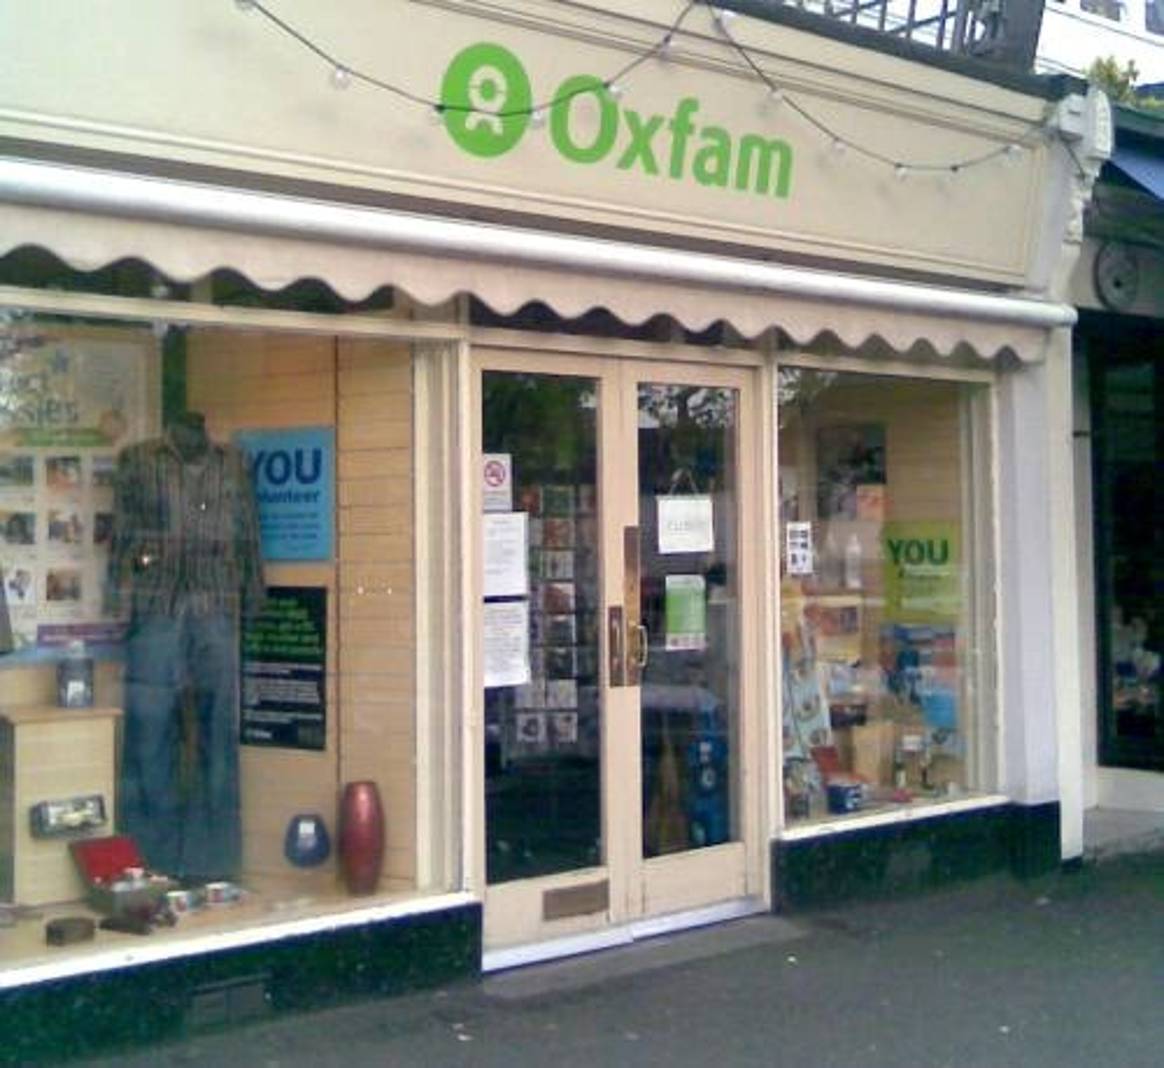 M&S 'kit de vestuario en un día' para Oxfam